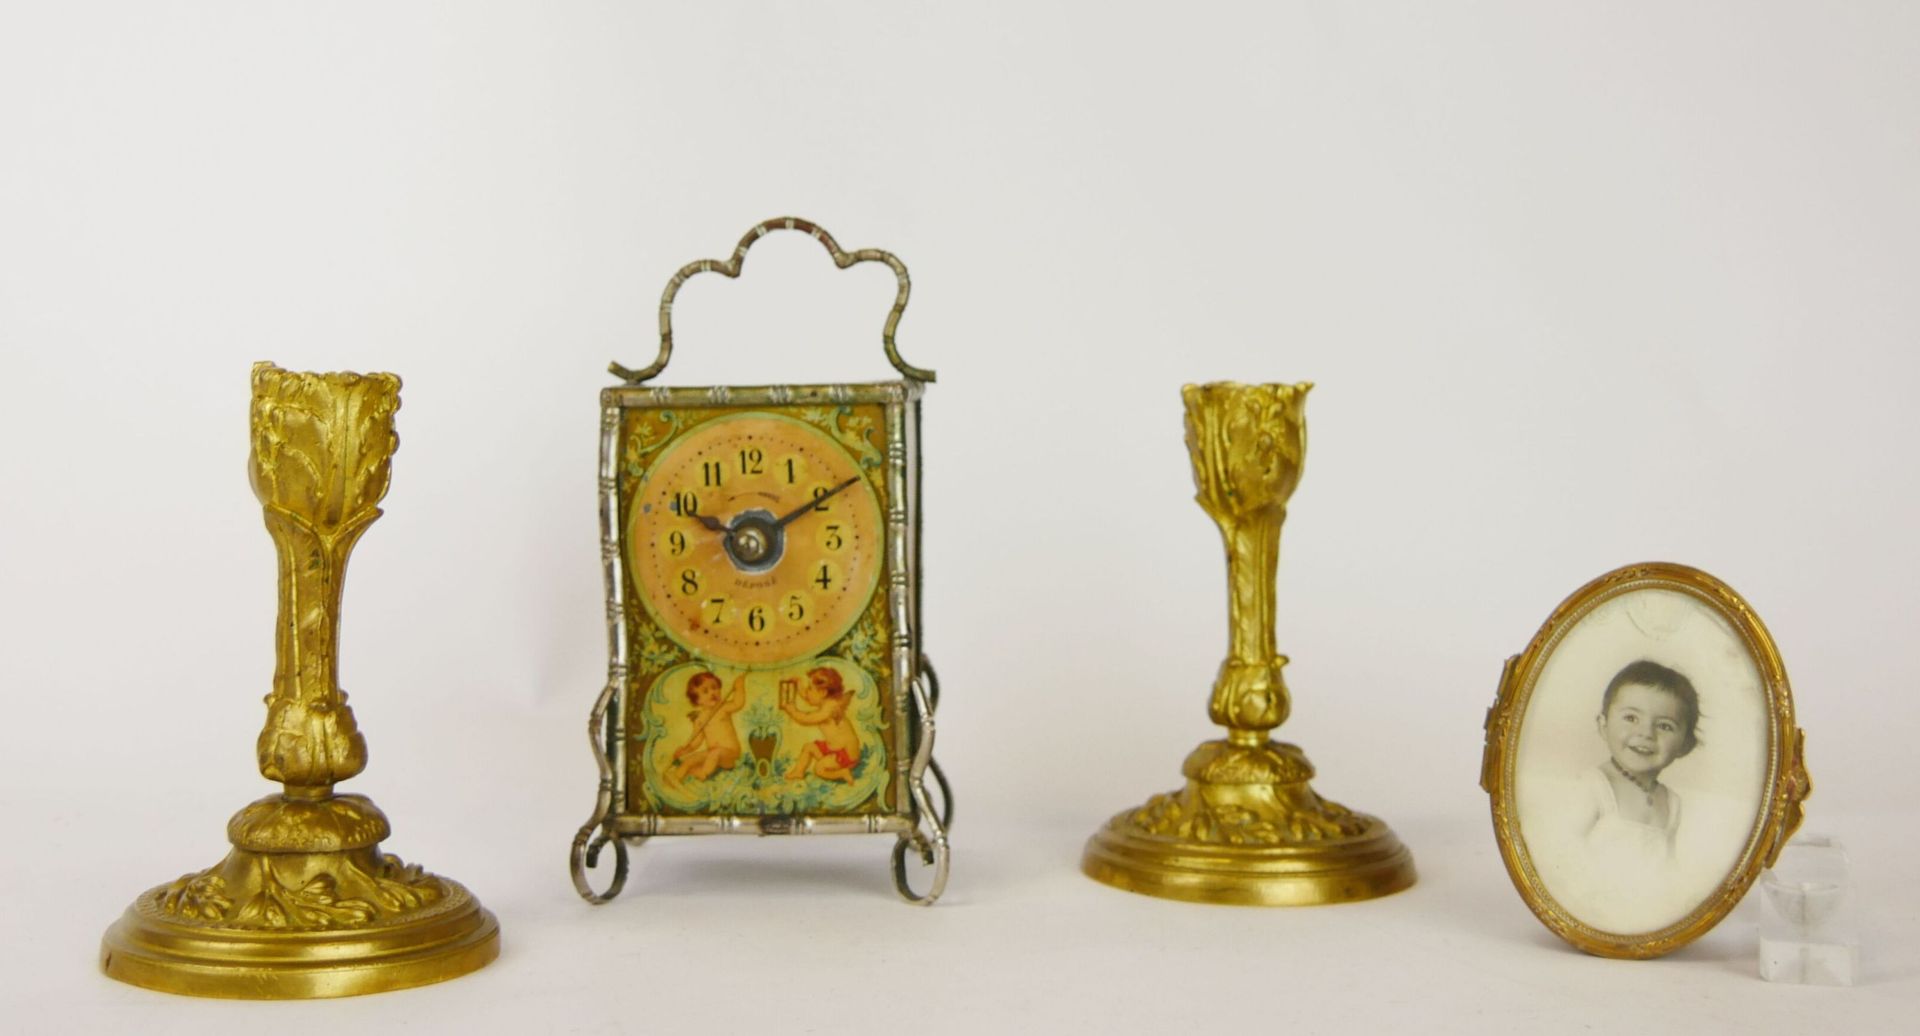 Null 很多小饰品，包括:

- 一个椭圆形的鎏金金属盒，上面有卷轴装饰，覆盖着一张儿童的照片。尺寸：3 x 8.5 x 6.5厘米

- 一对装饰有刺桐叶的&hellip;